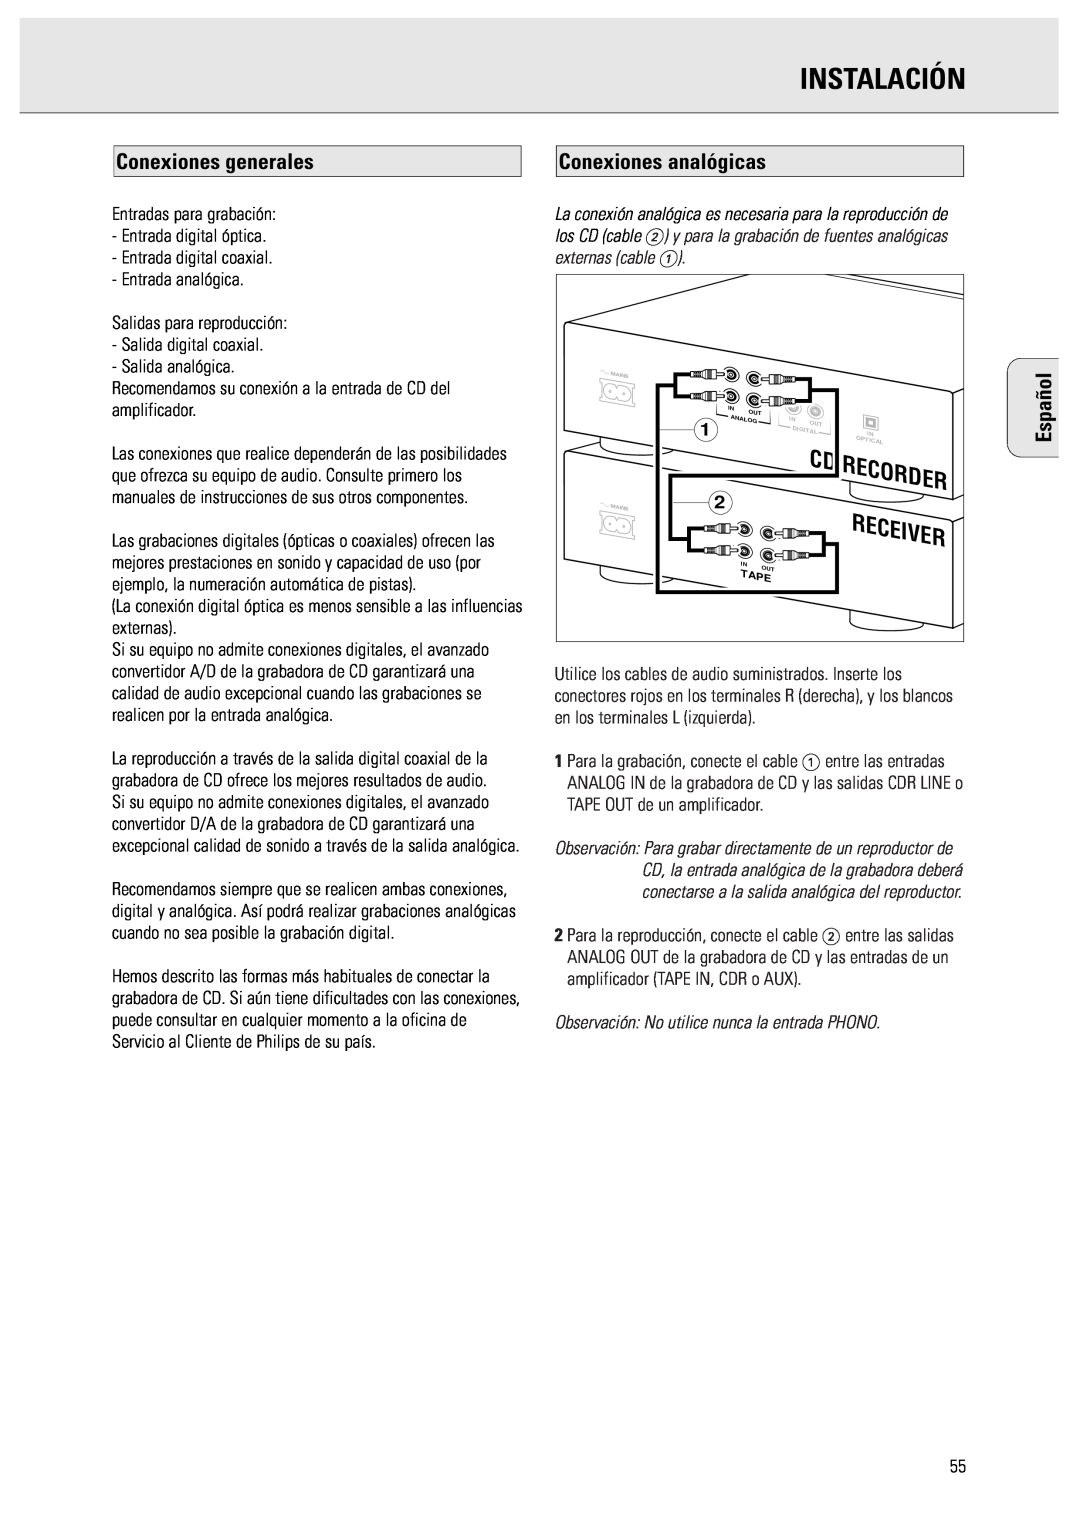 Philips CDR570 manual Instalación, Conexiones generales, Conexiones analógicas, Español, Receiver, Recorder 